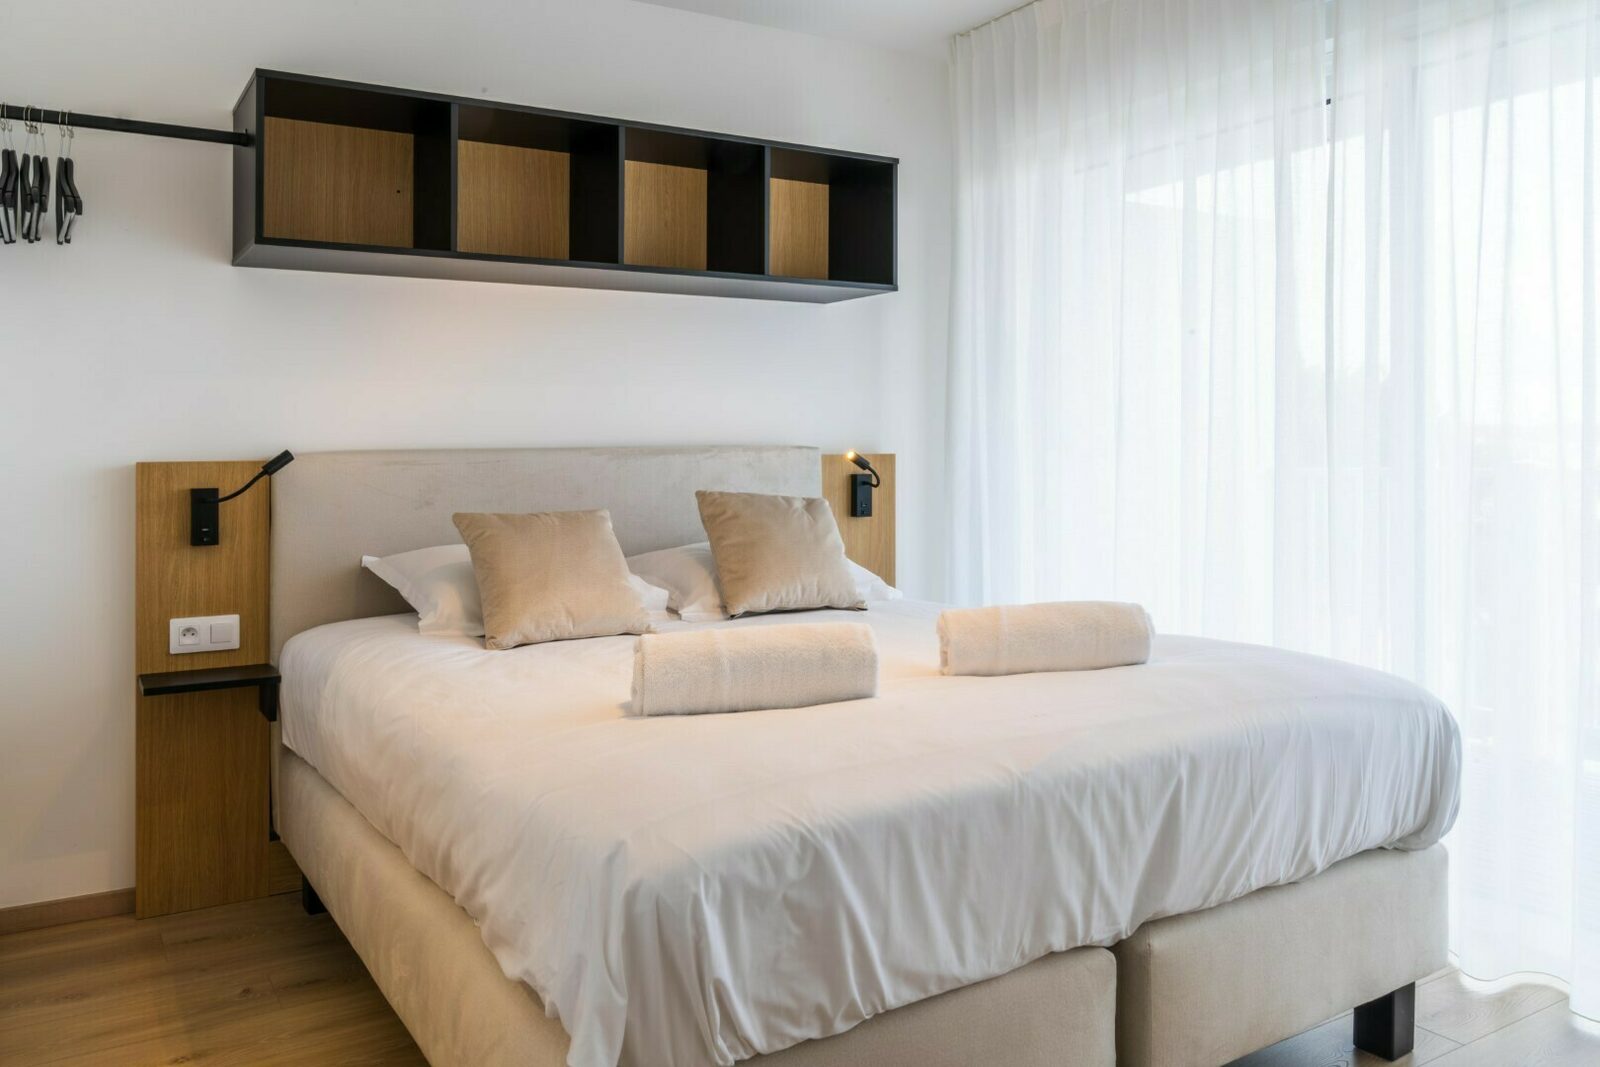 [Premium] Appartement met 1 slaapkamer dubbel bed, 2 enkele bedden & stapelbed